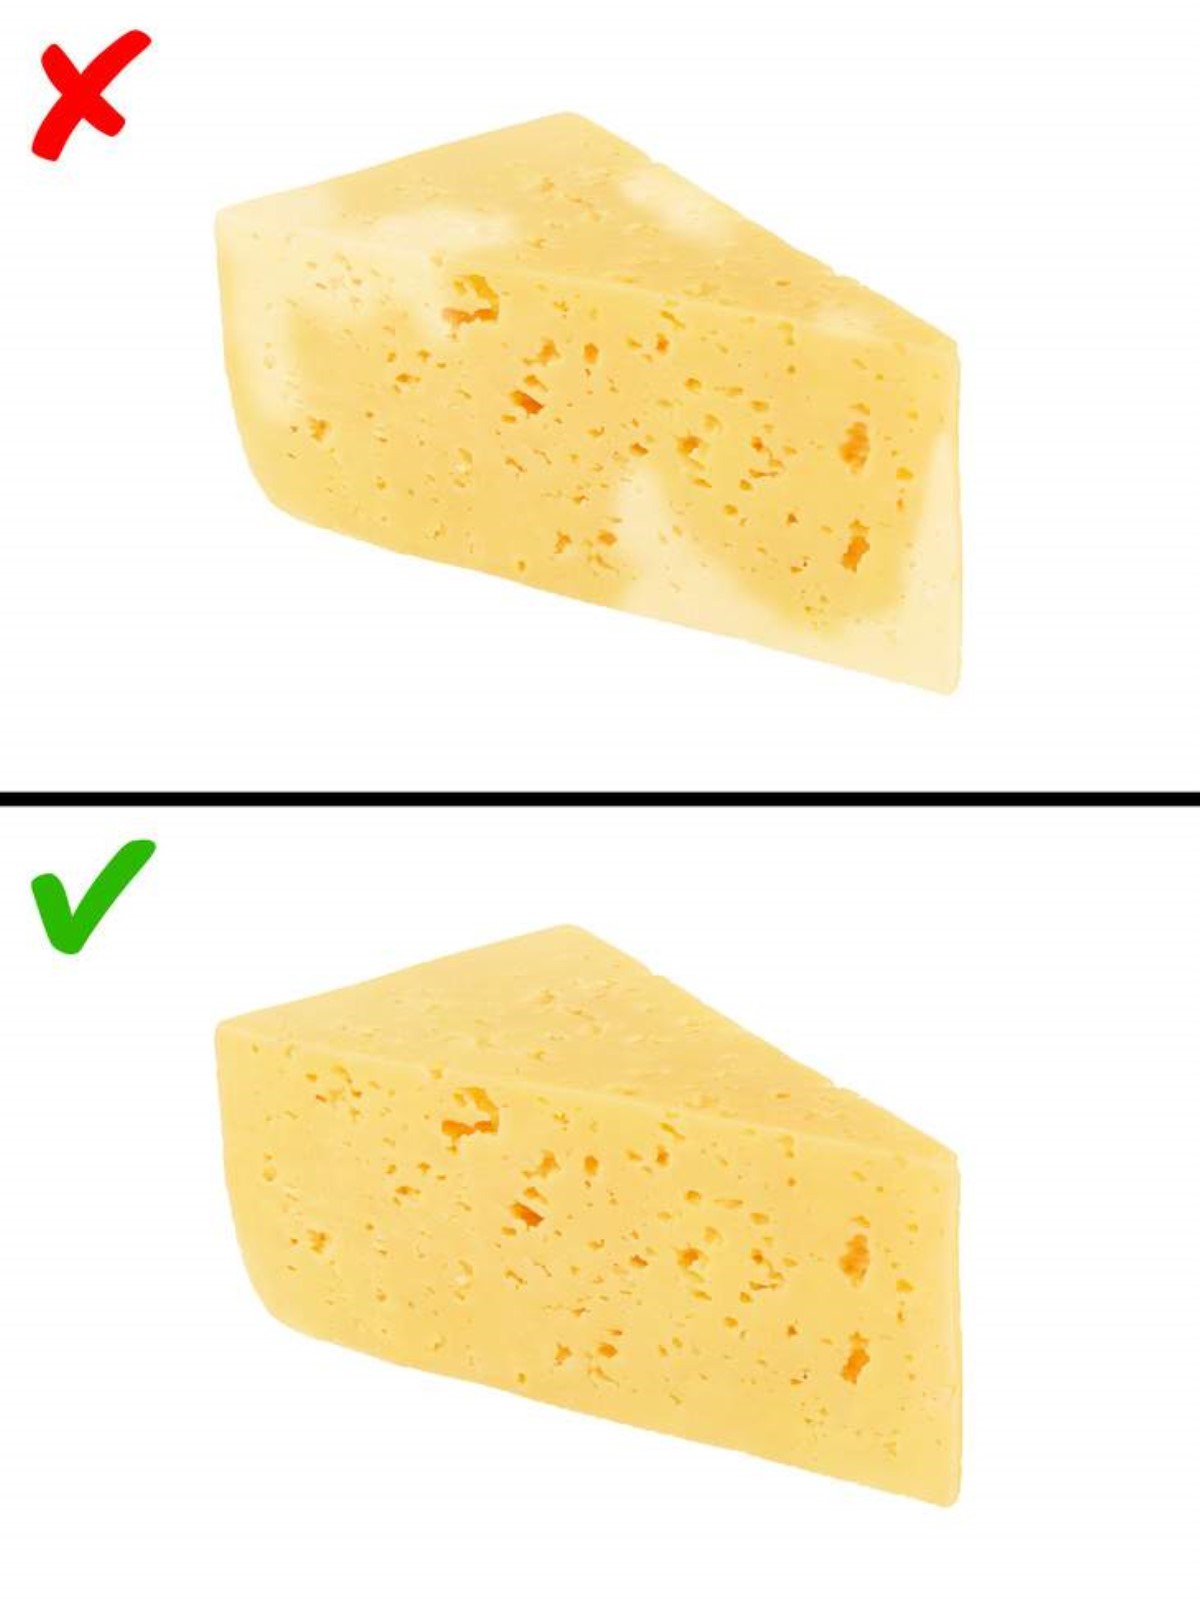 Почему сыр не получился. Твердый сыр с плесенью. Сыр твердый. Сыр обычный. Правильный сыр.